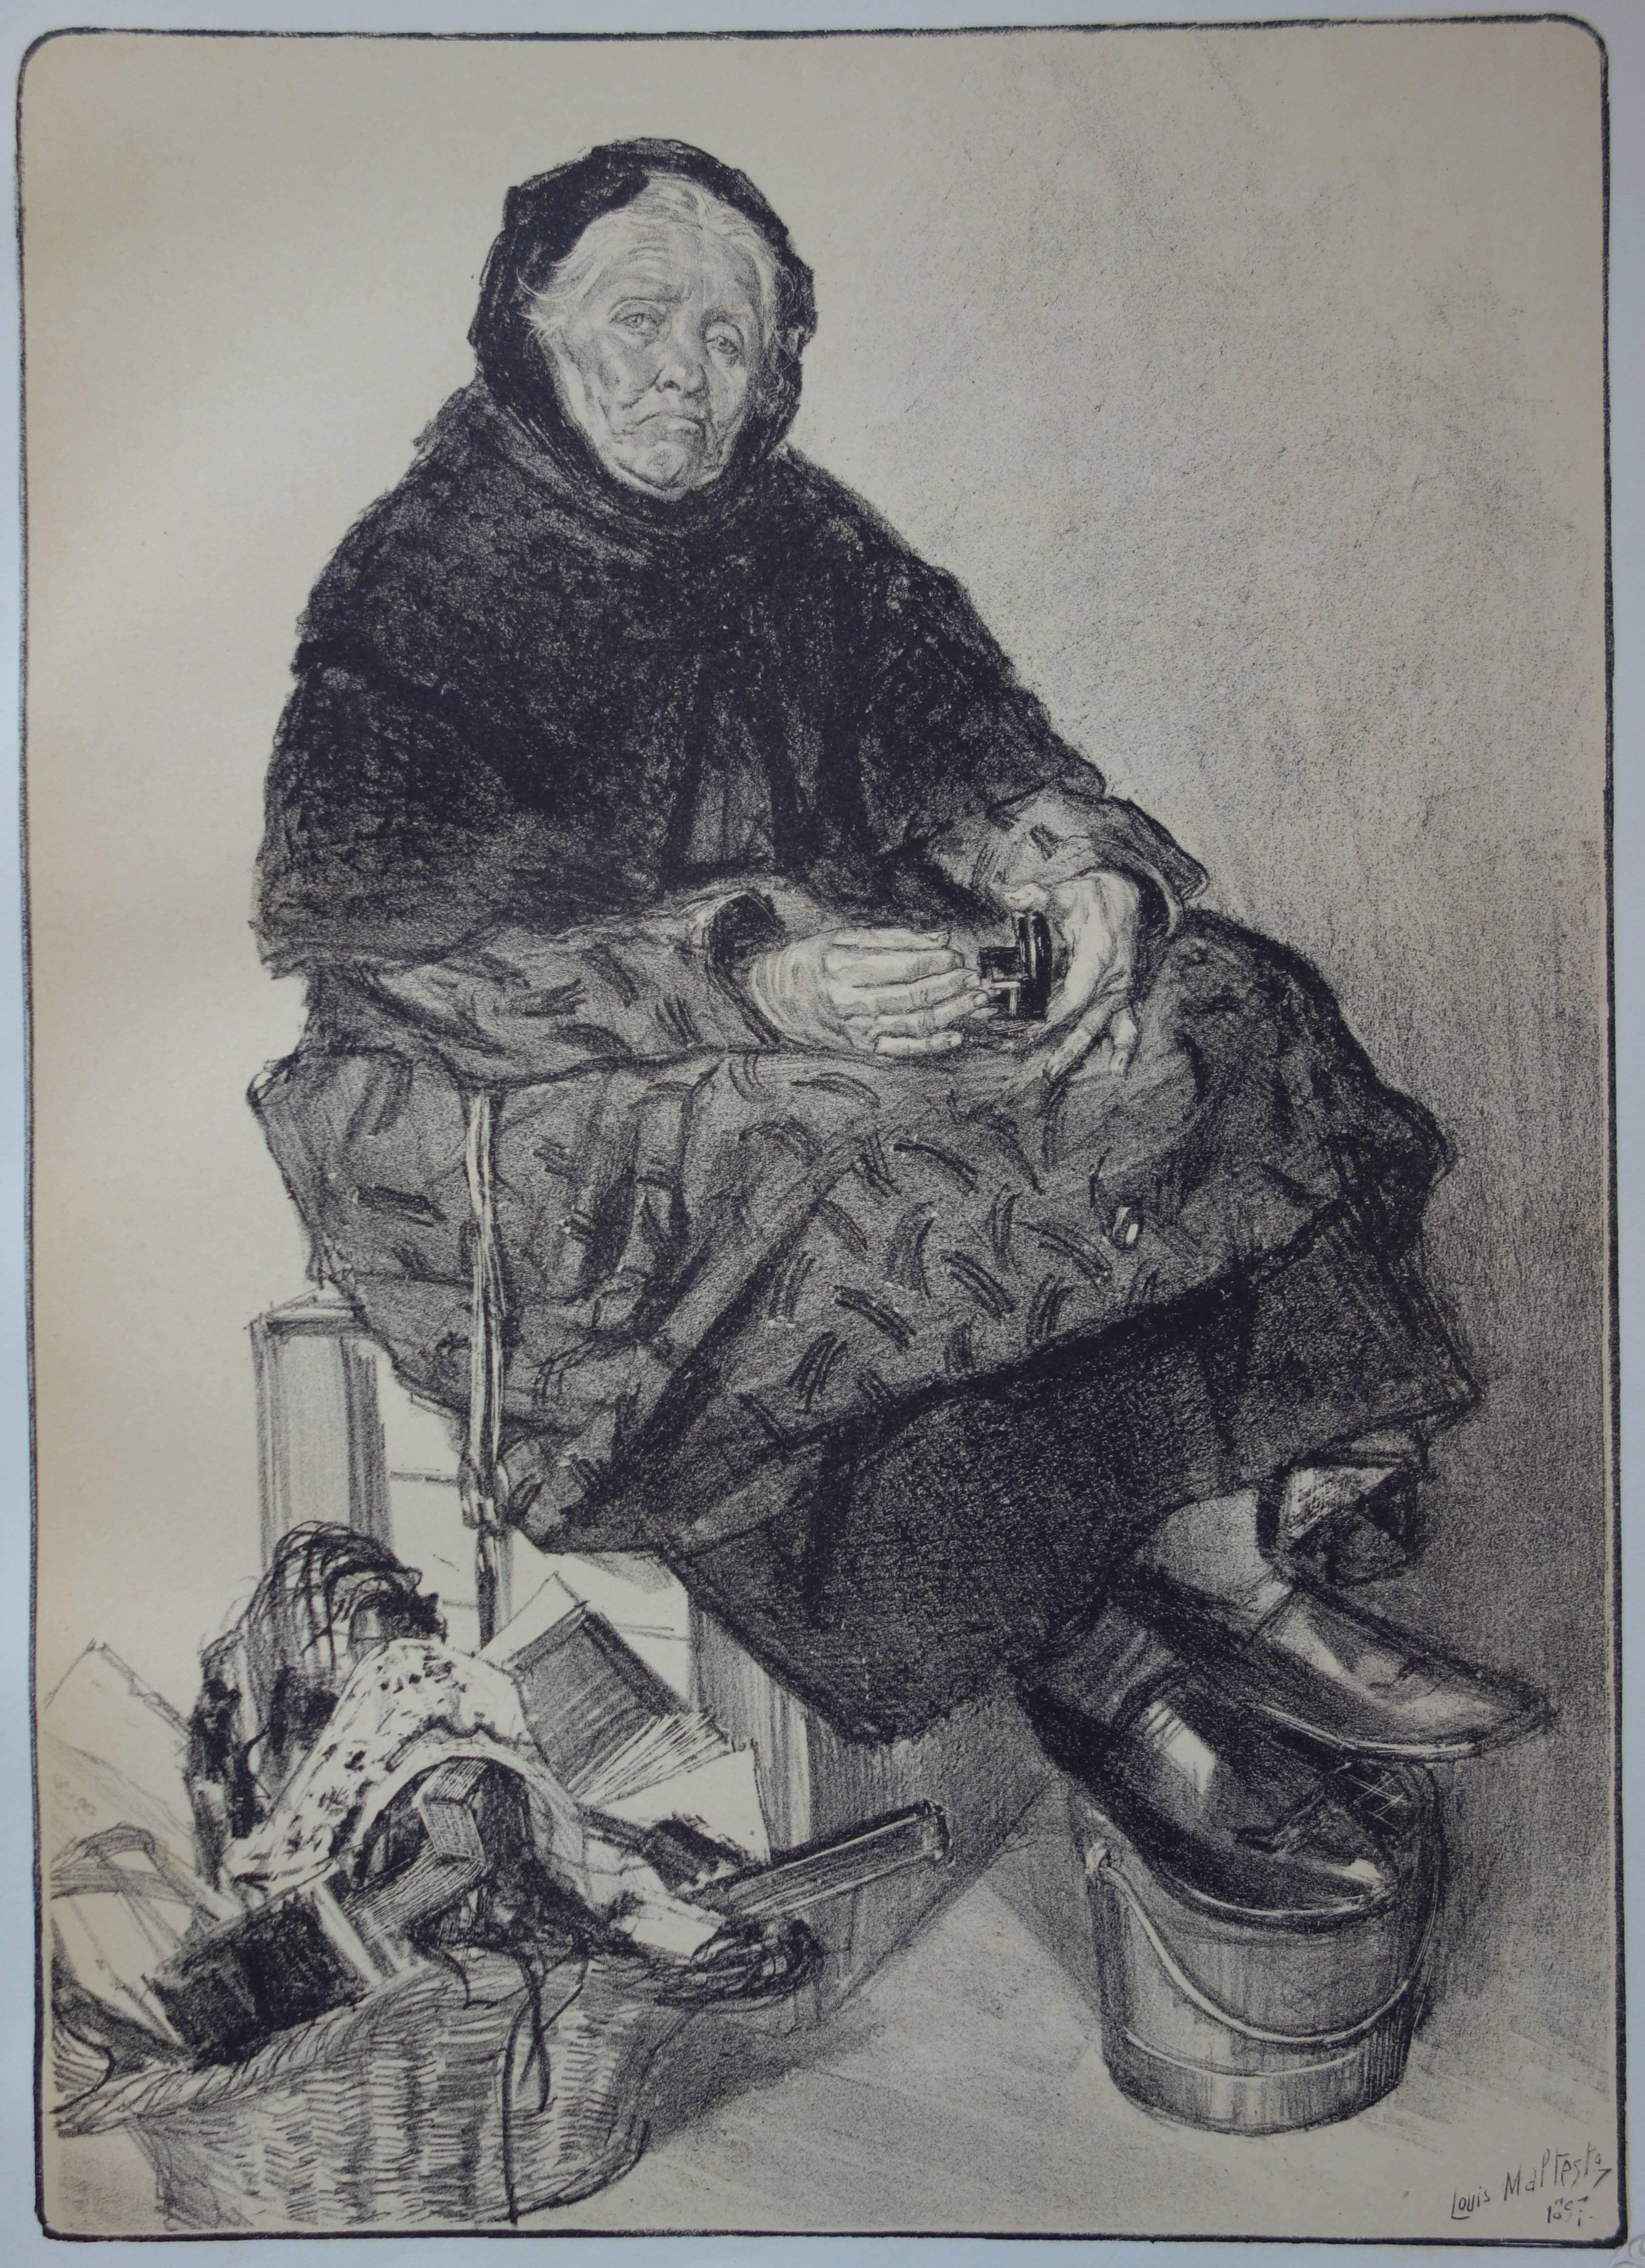 La vieille femme commerçante - lithographie originale (1897-1898) - Art nouveau Print par Louis Malteste